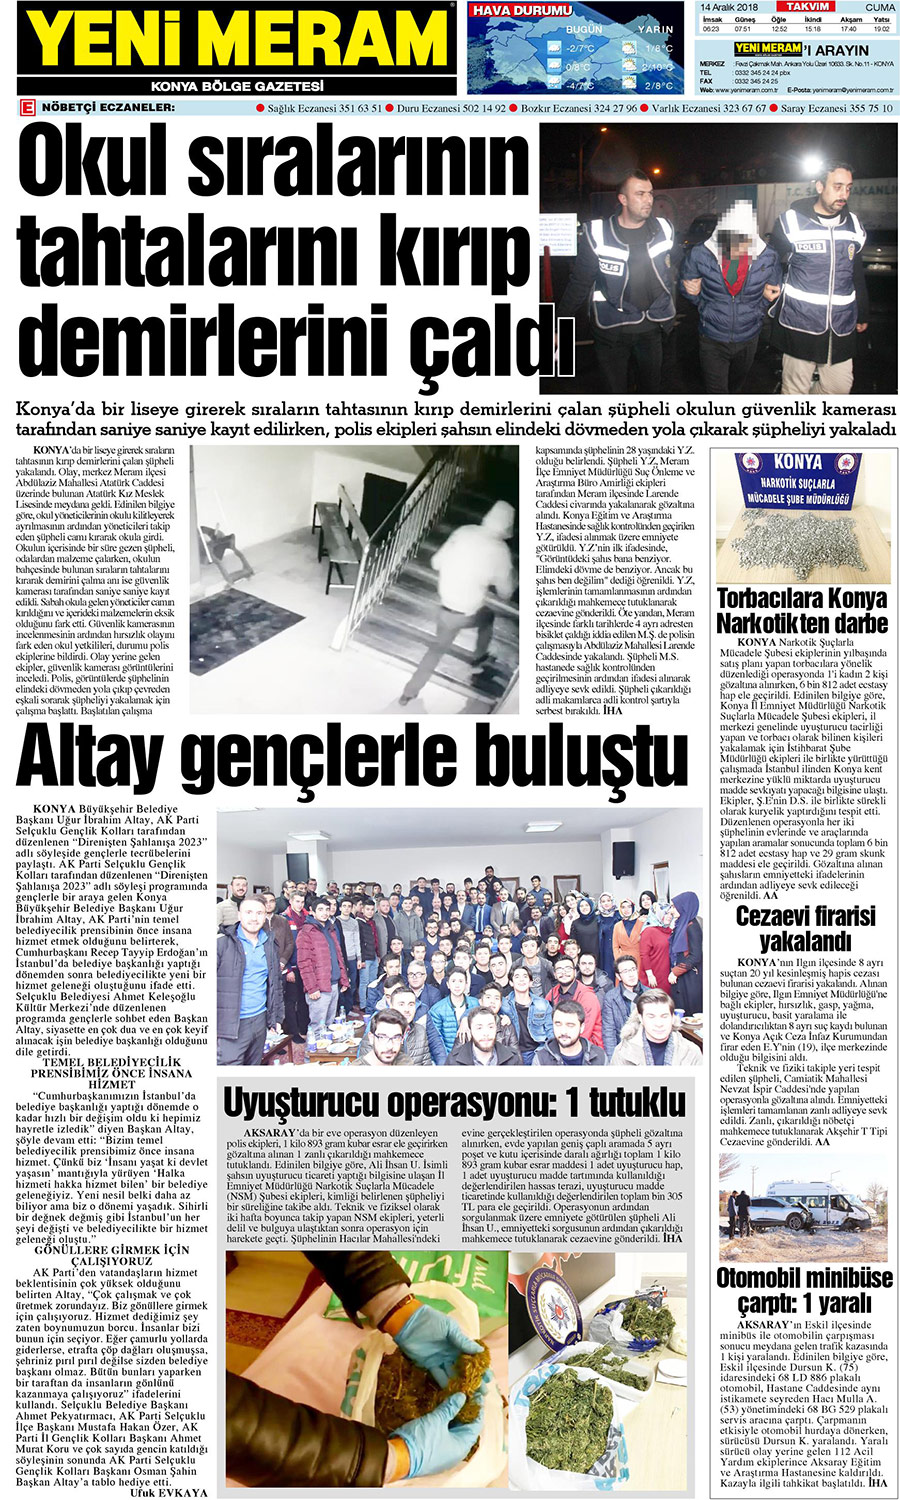 14 Aralık 2018 Yeni Meram Gazetesi